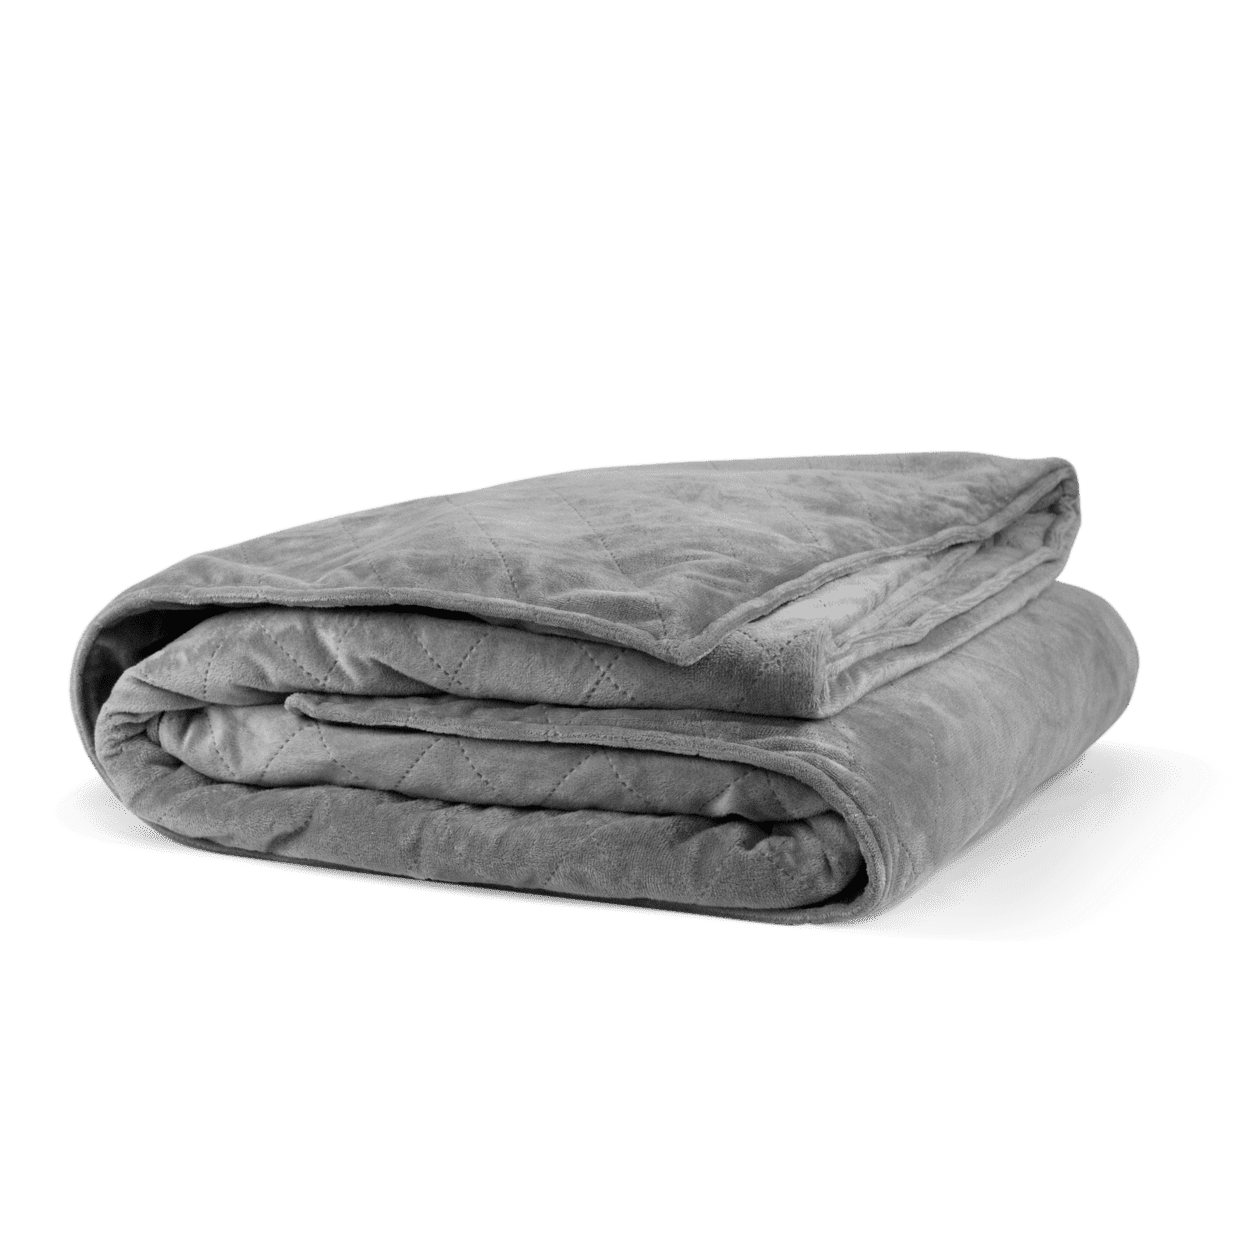 Blanket PNG Image File